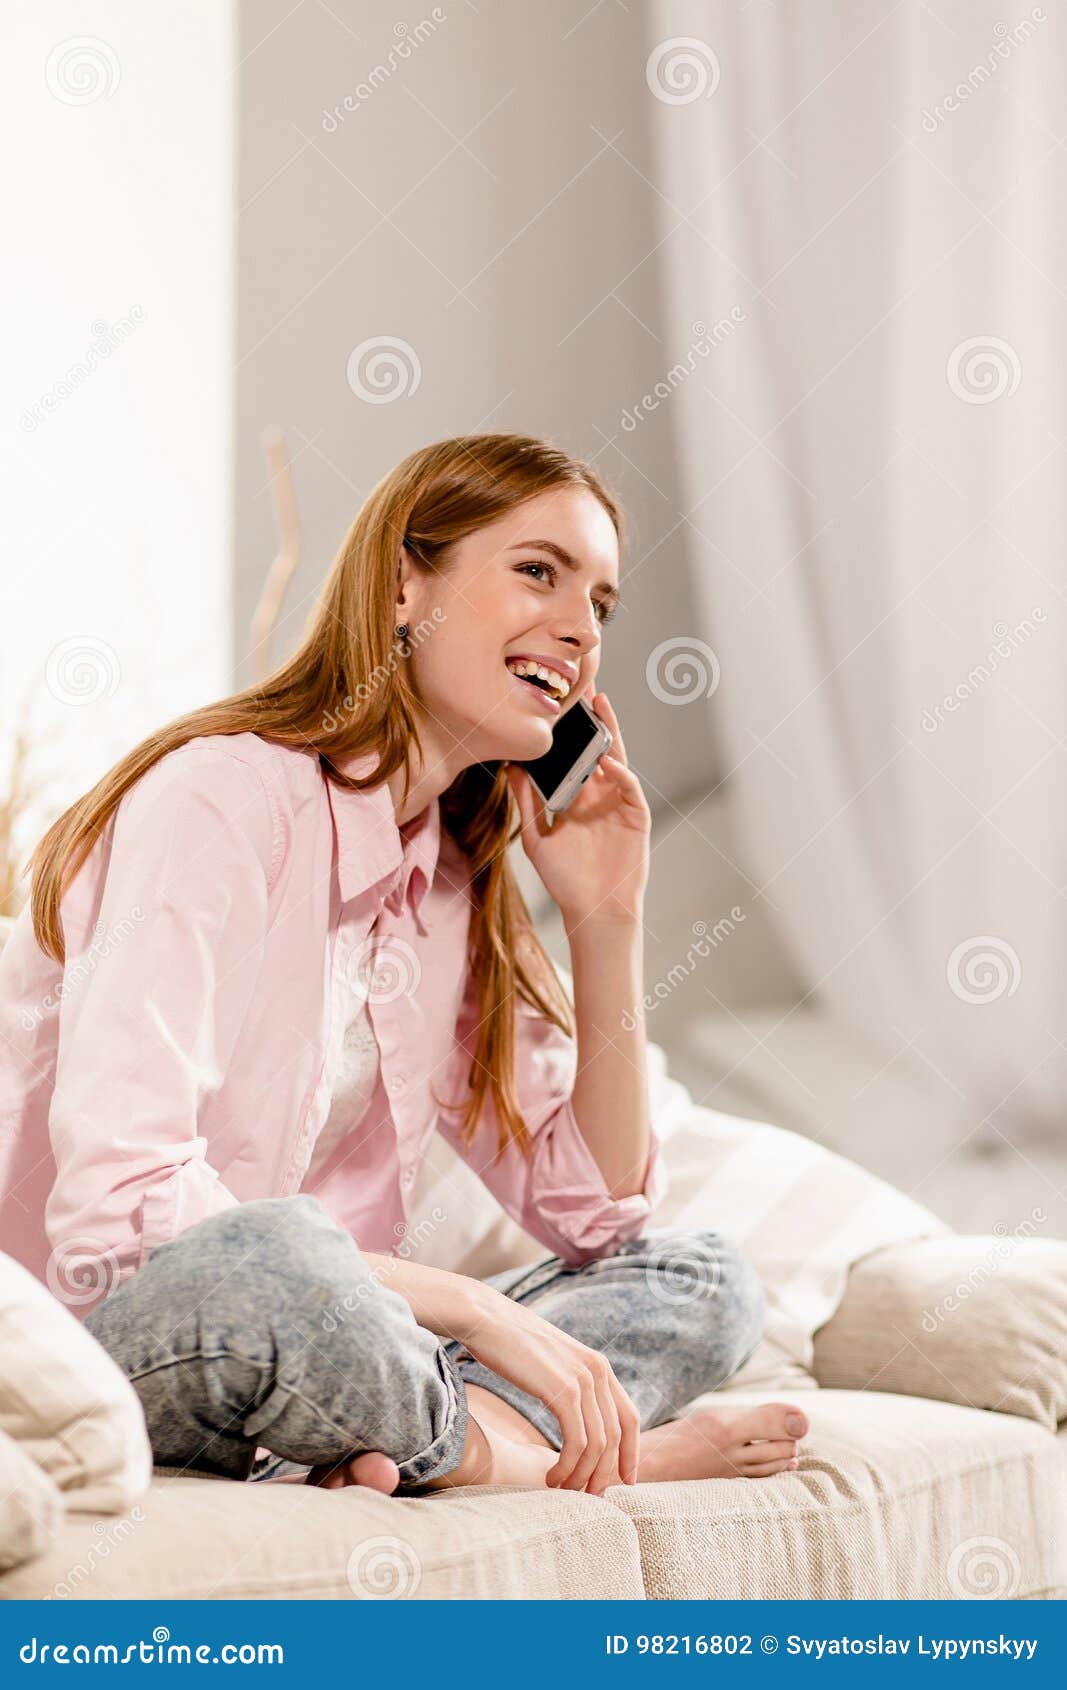 Сестра сидит в телефоне. Девушки разговаривают в комнате. Девушка сидит в телефоне. Девушка сидит в телефоне фото. Девушка говорит по телефону на диване.